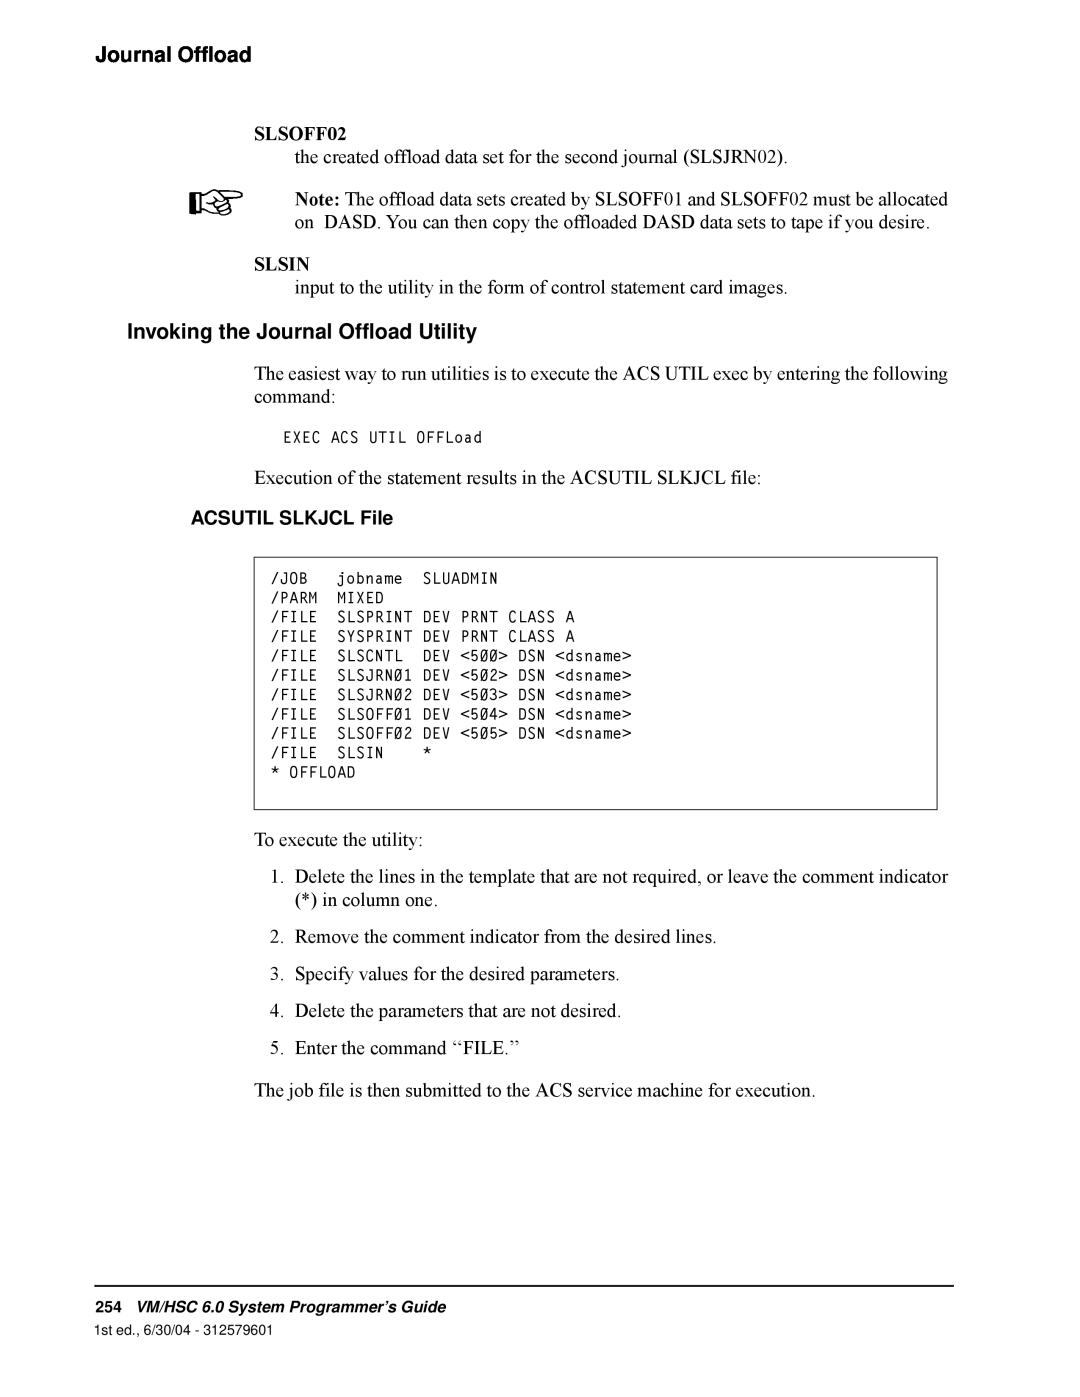 StorageTek 6 manual Invoking the Journal Offload Utility, SLSOFF02, Slsin, ACSUTIL SLKJCL File 